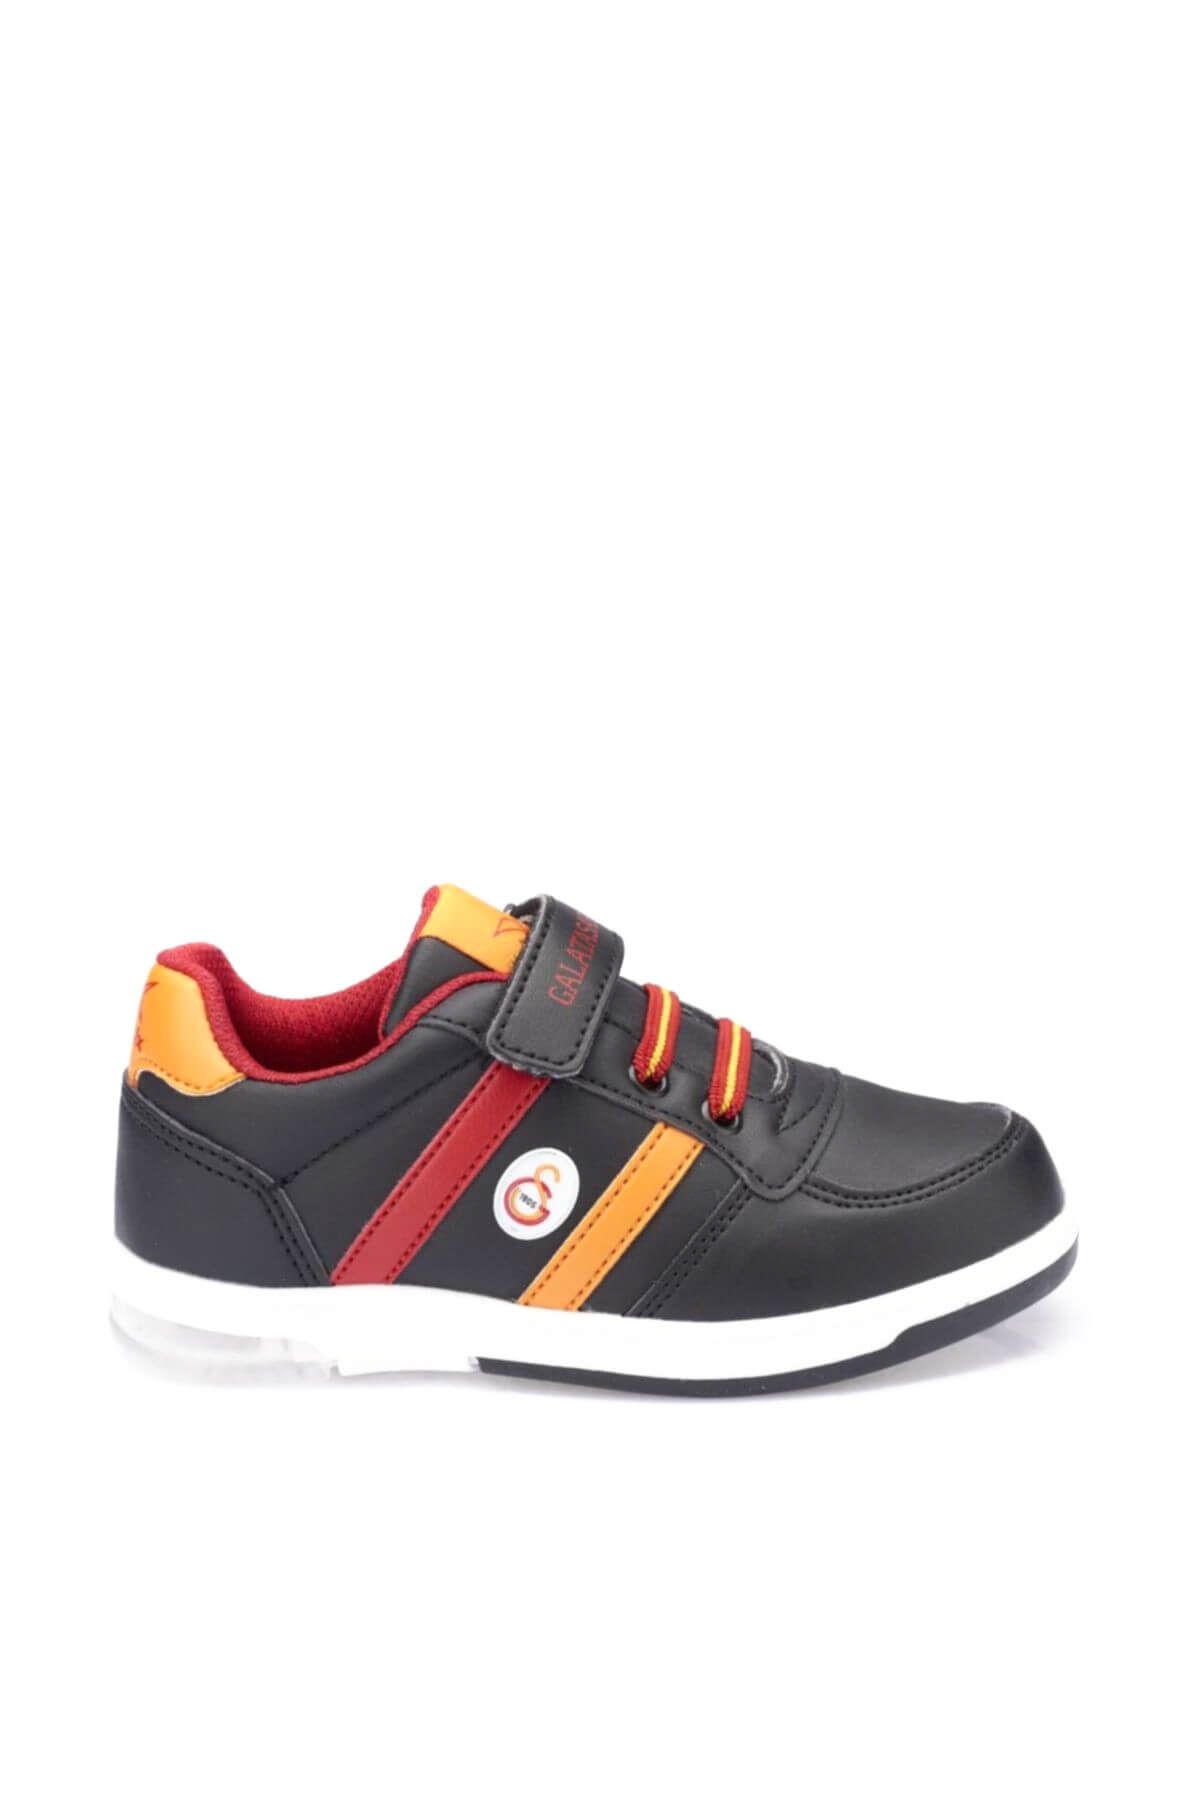 Galatasaray Upton Pu Gs Siyah Kırmızı Sarı Erkek Çocuk Sneaker Ayakkabı 100337672